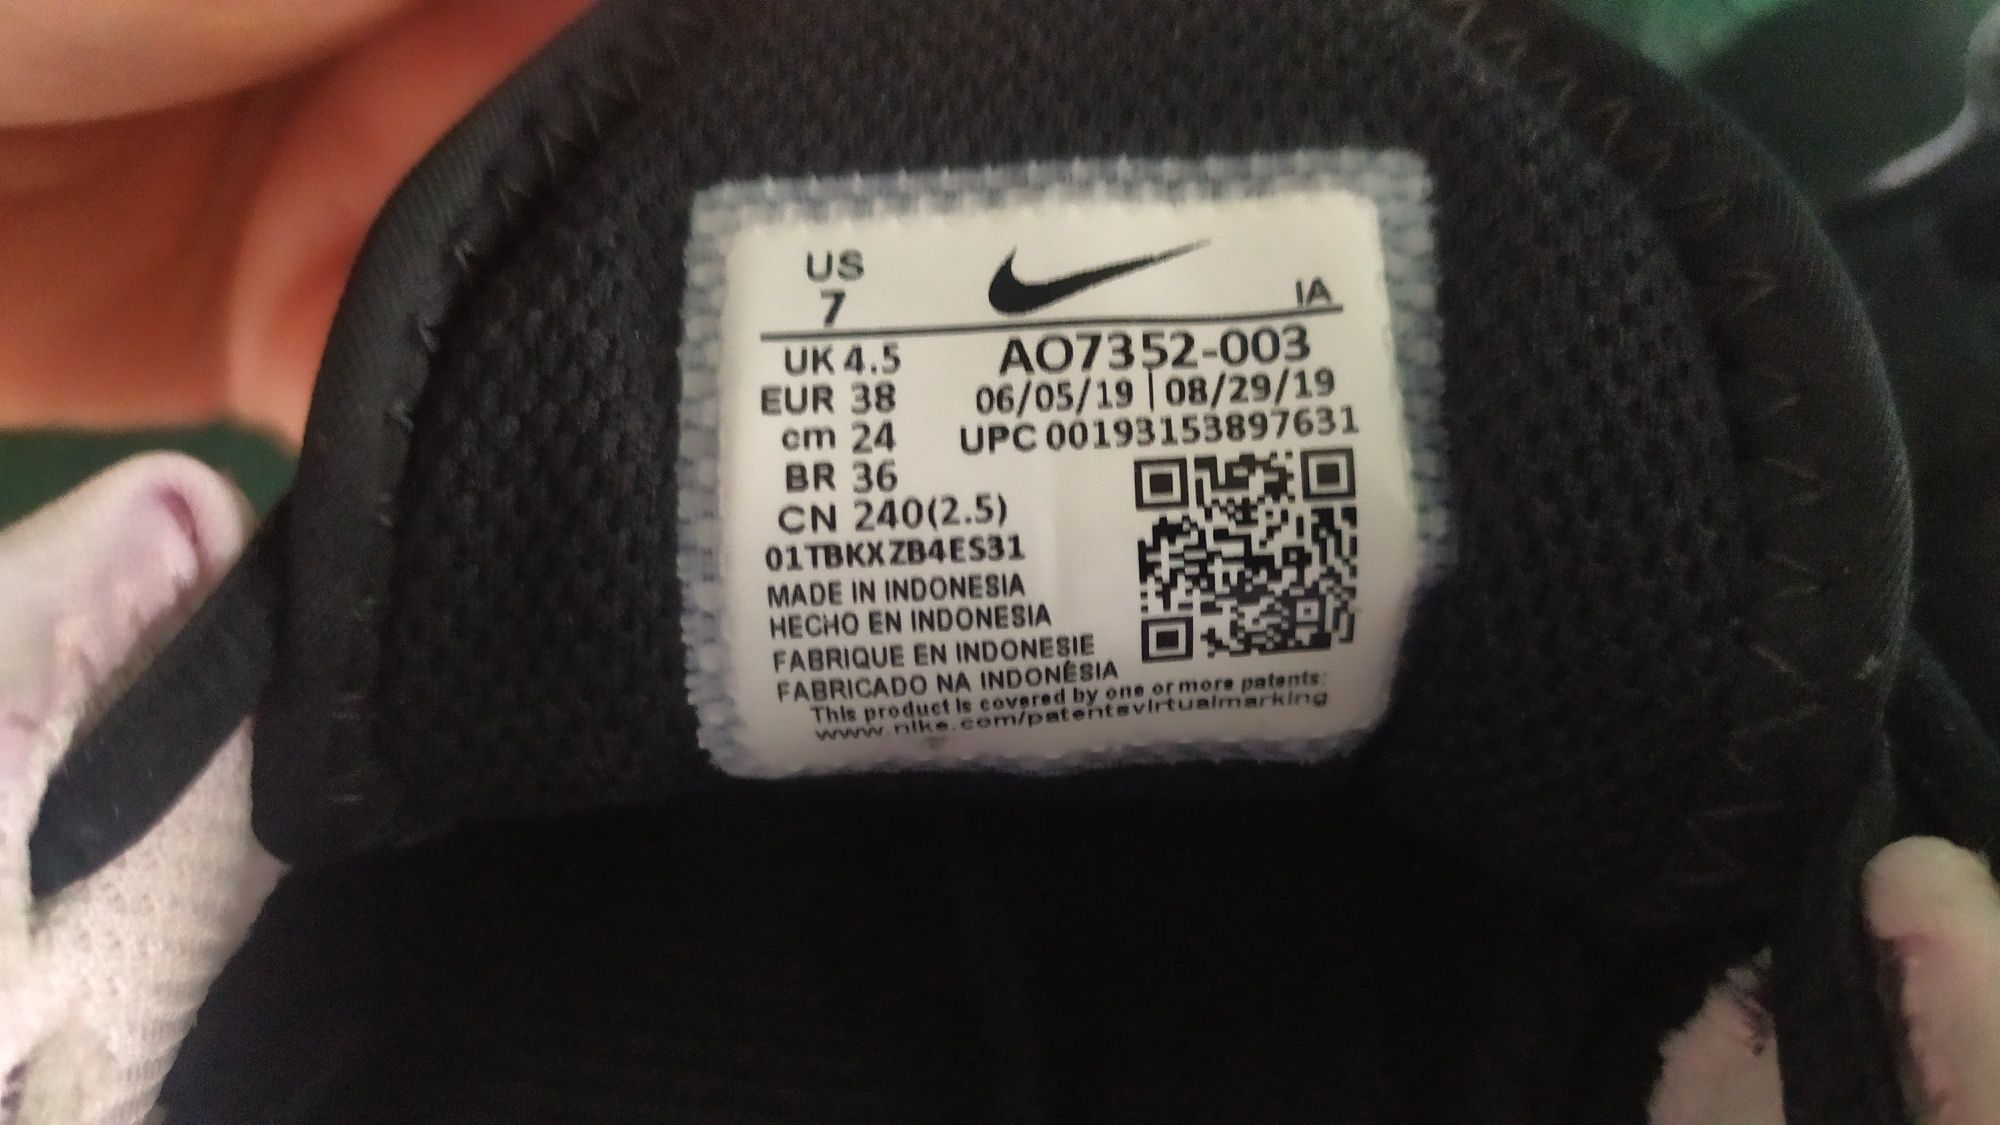 Buty damskie Nike Air Max Wildcard Clay rozmiar 38 (349.99zl)